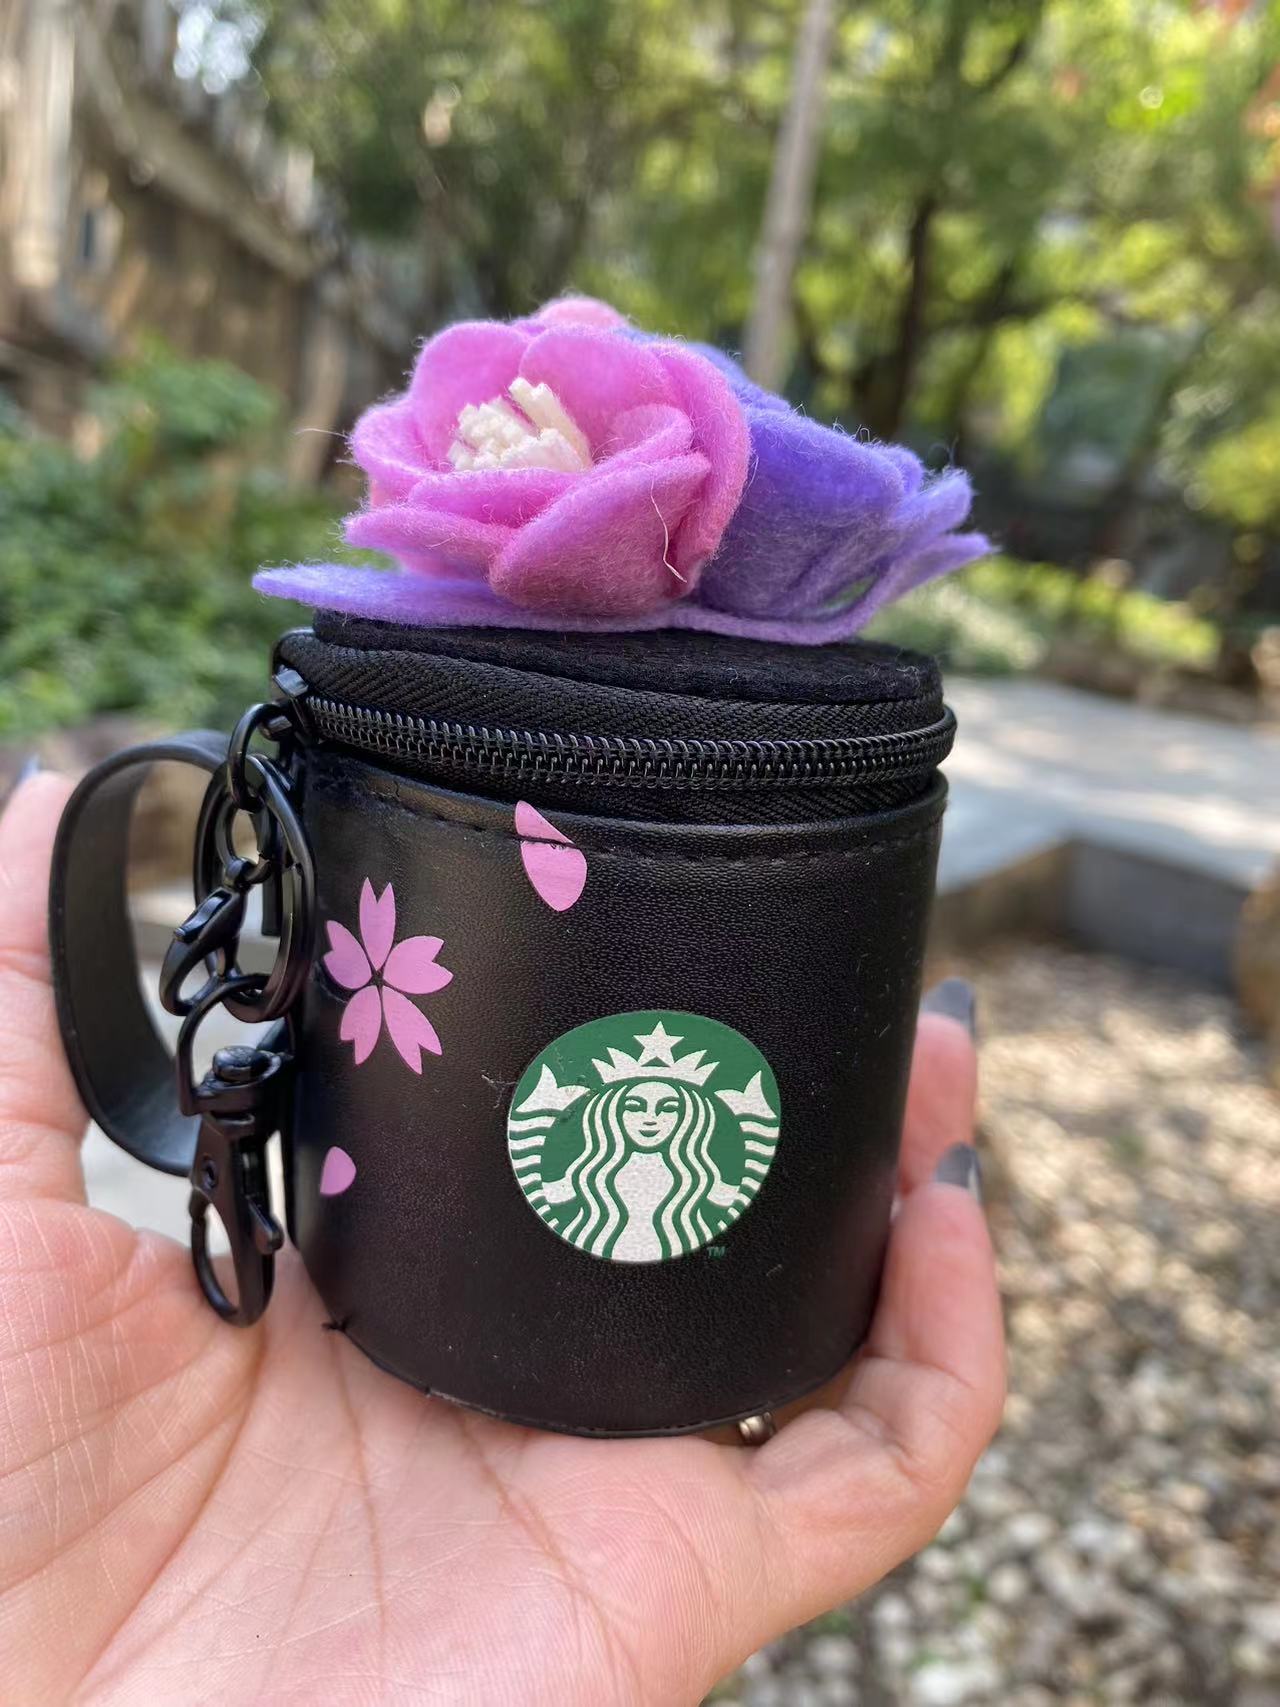 Starbucks Cherry Blossom Coin Purse Black White Keychain Pendant